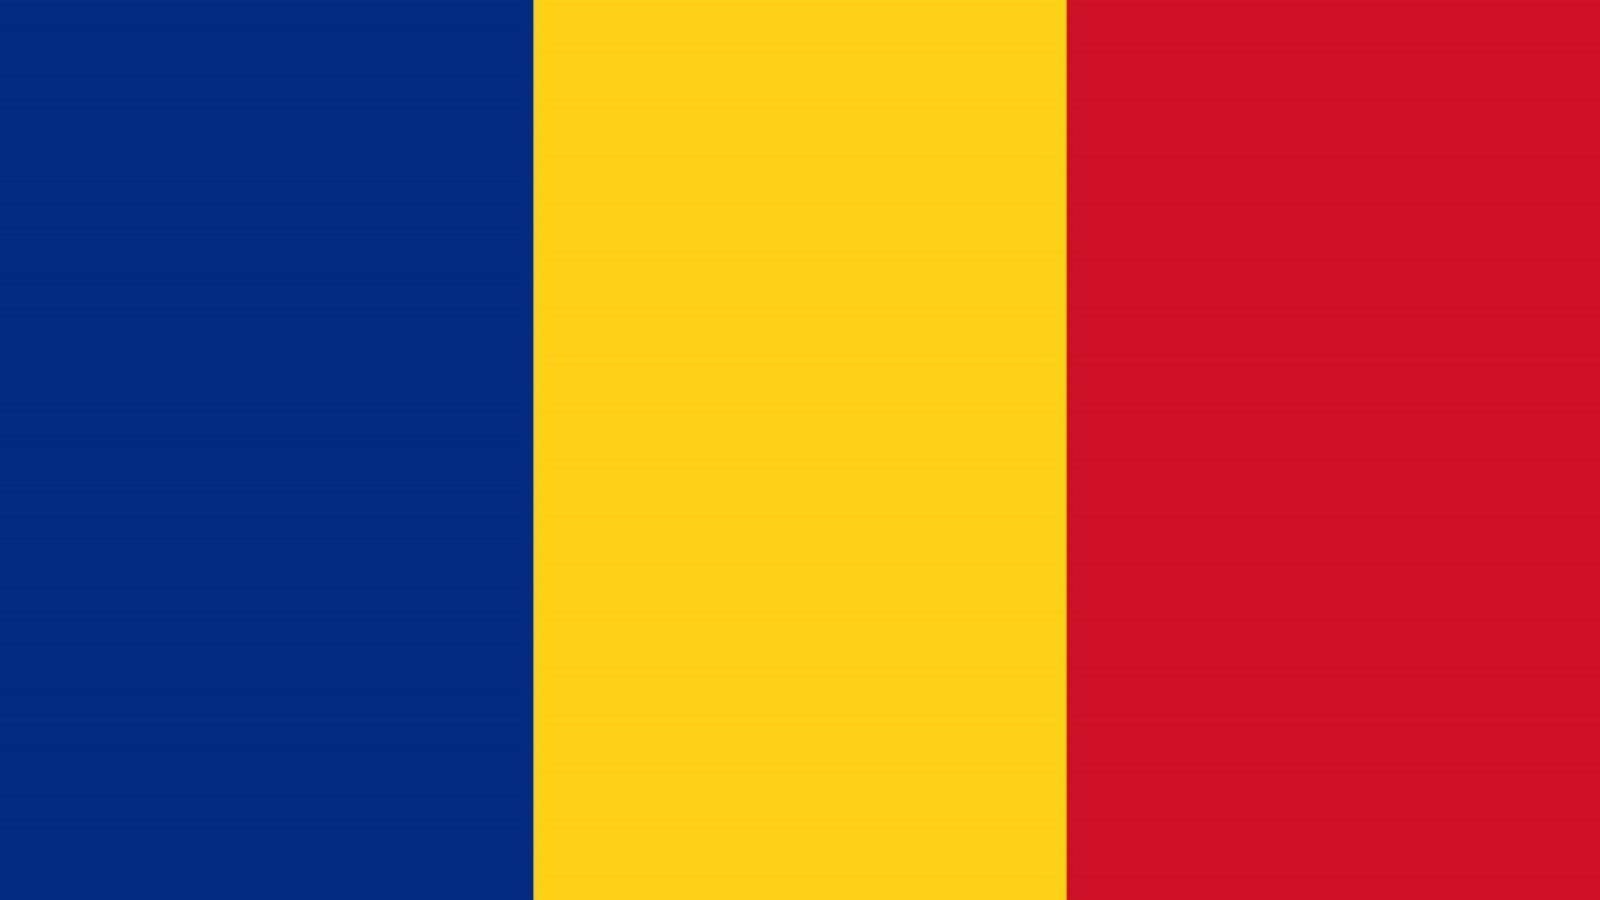 Romanian hallituksen laki 5g edustajainhuone